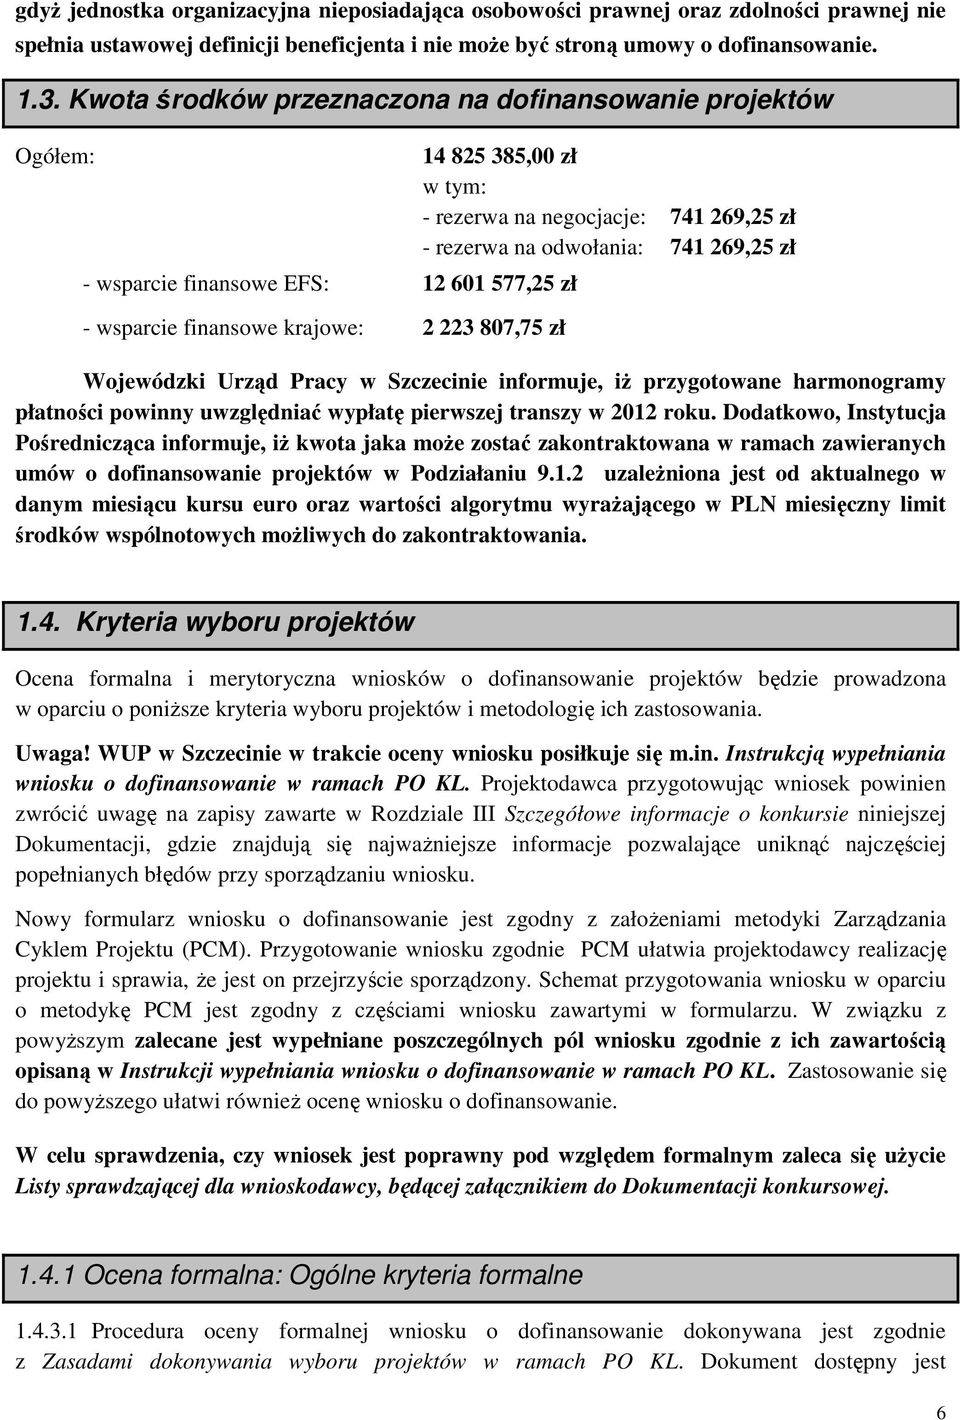 negocjacje: 741 269,25 zł - rezerwa na odwołania: 741 269,25 zł Wojewódzki Urząd Pracy w Szczecinie informuje, iż przygotowane harmonogramy płatności powinny uwzględniać wypłatę pierwszej transzy w